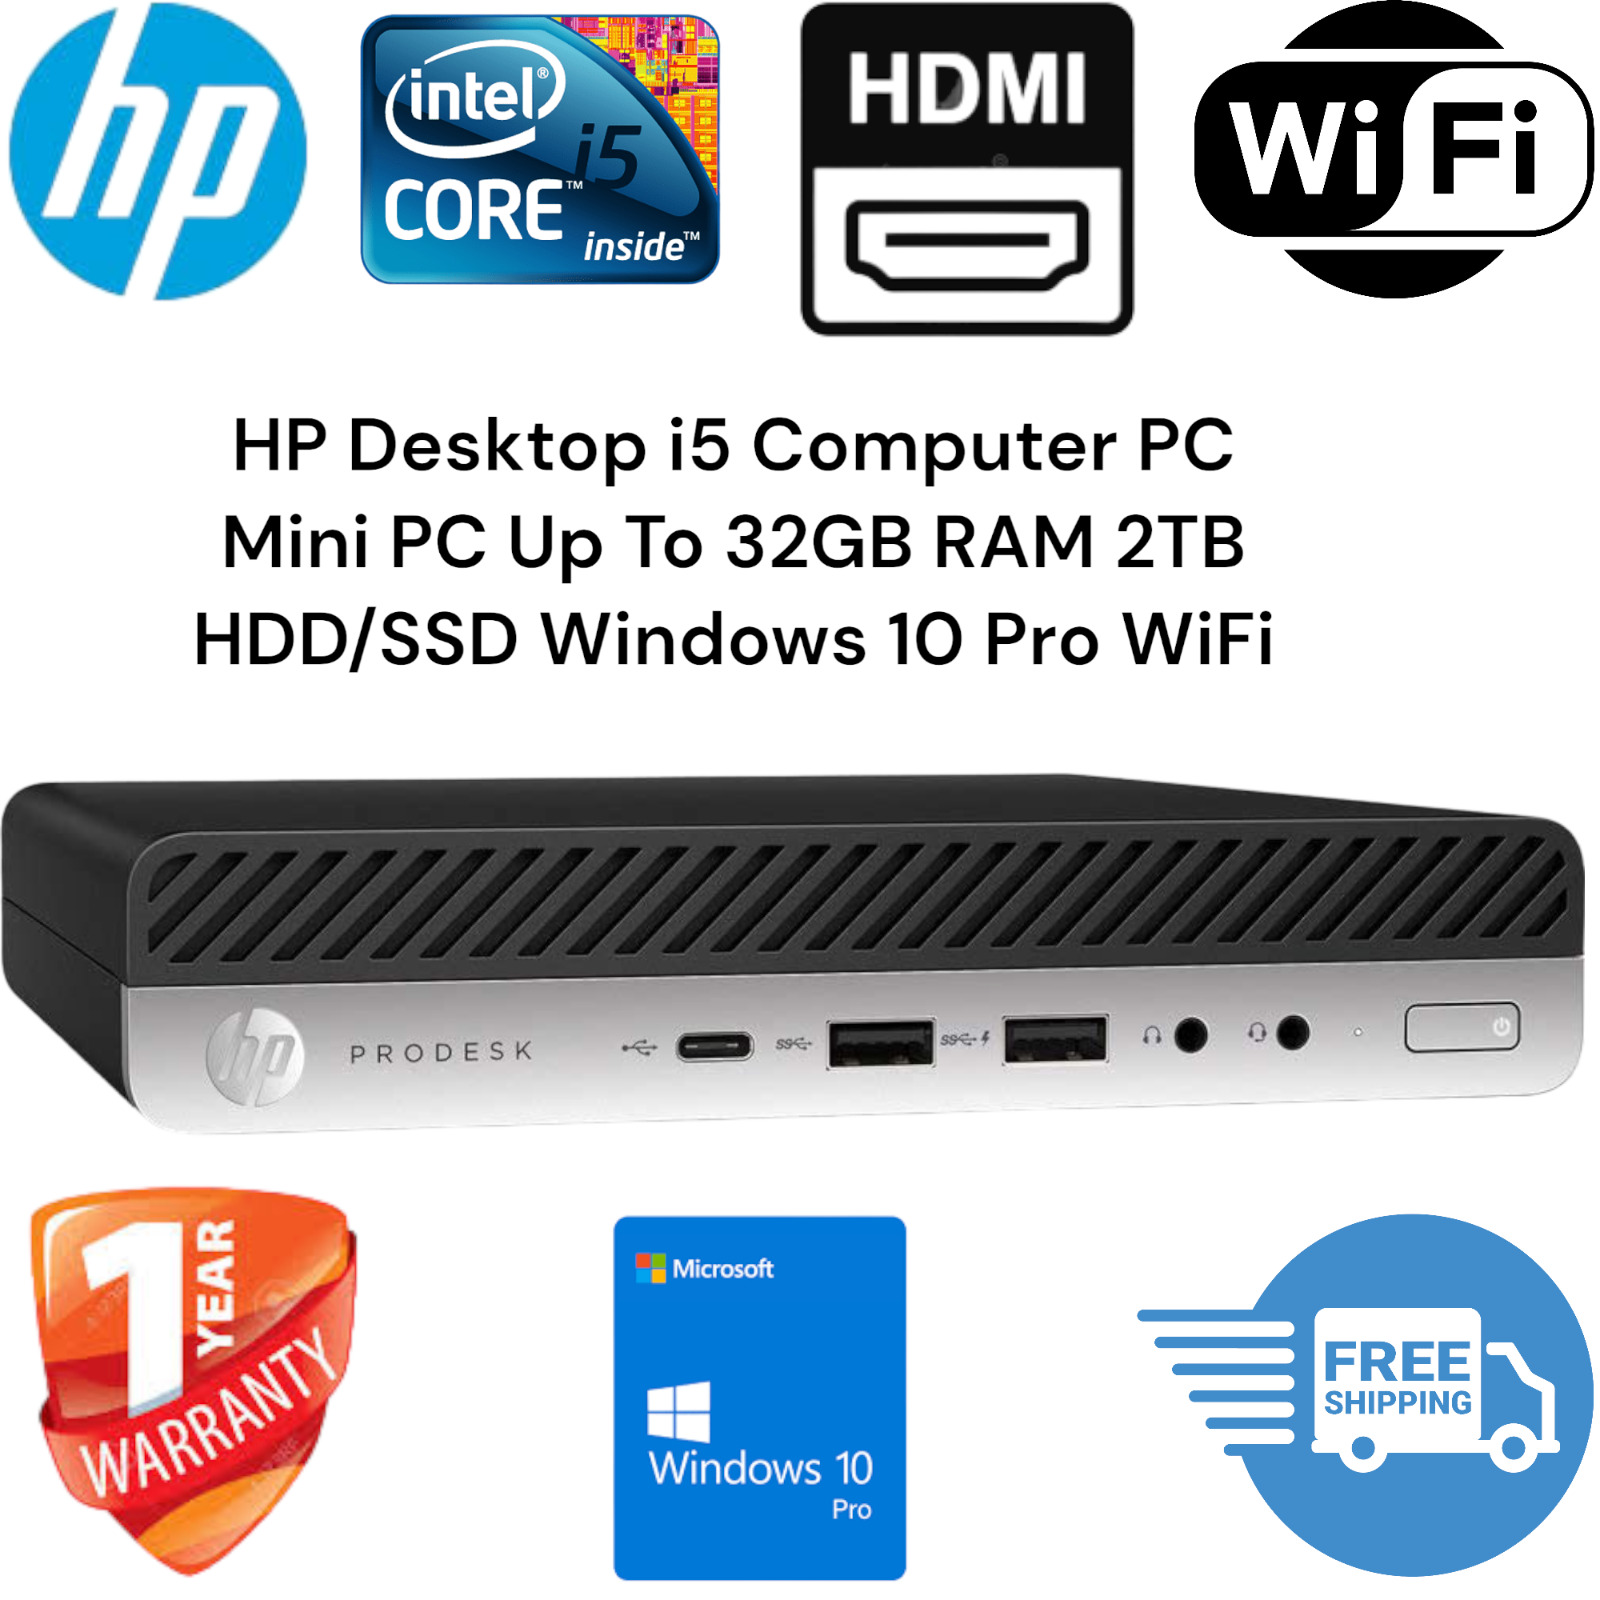 HP Desktop i5 Computer PC Mini PC Up To 32GB RAM 2TB HDD/SSD Windows 10 Pro WiFi